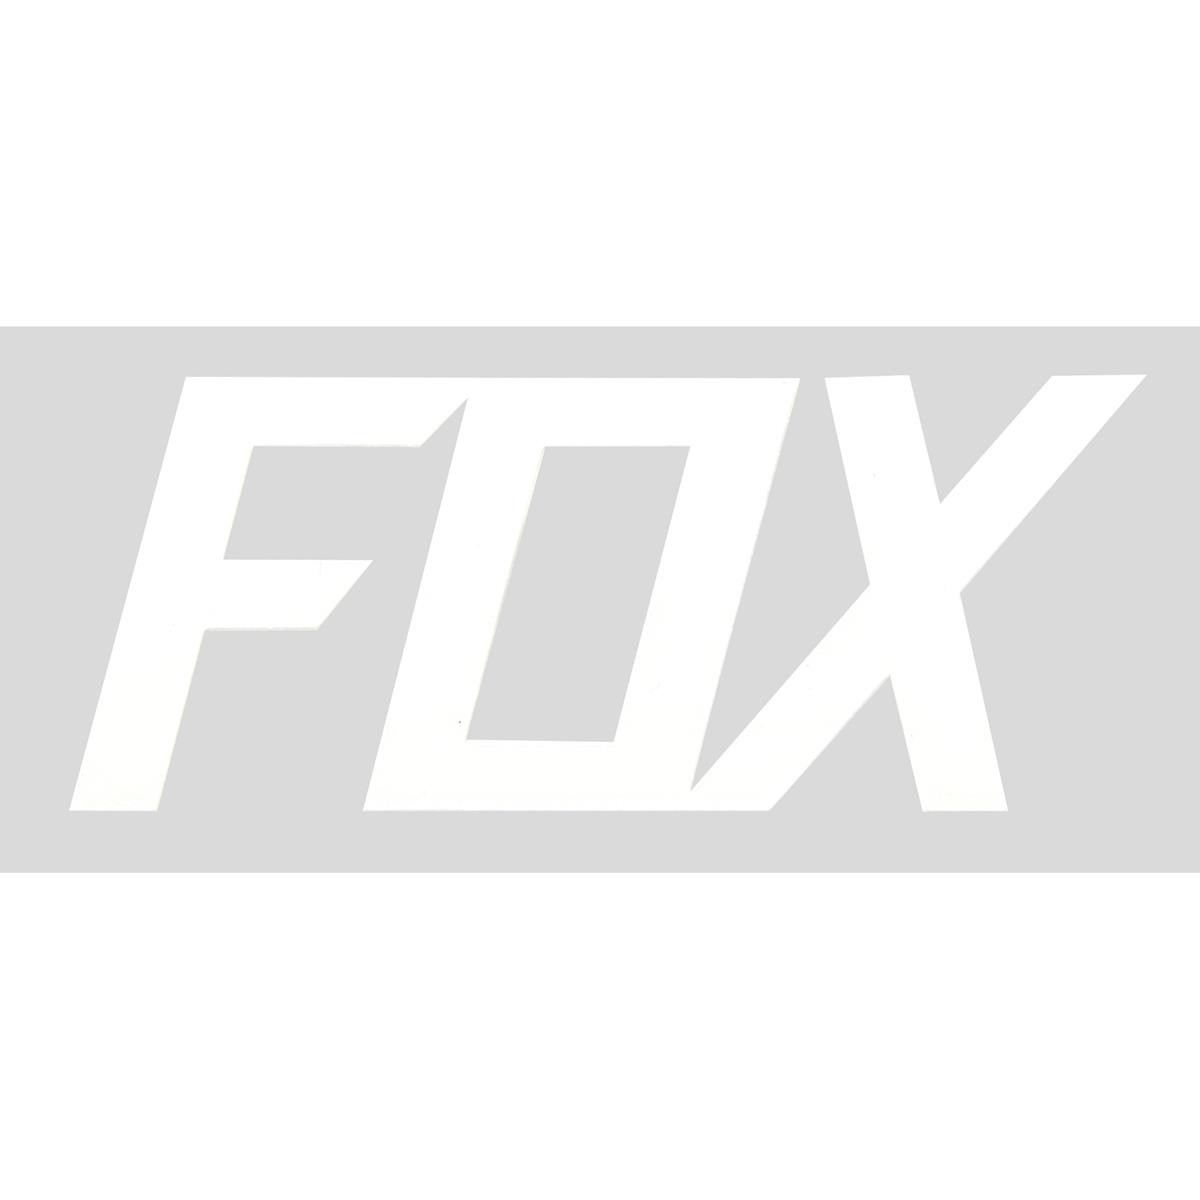 Fox Adesivi Fox TDC White - 7 cm